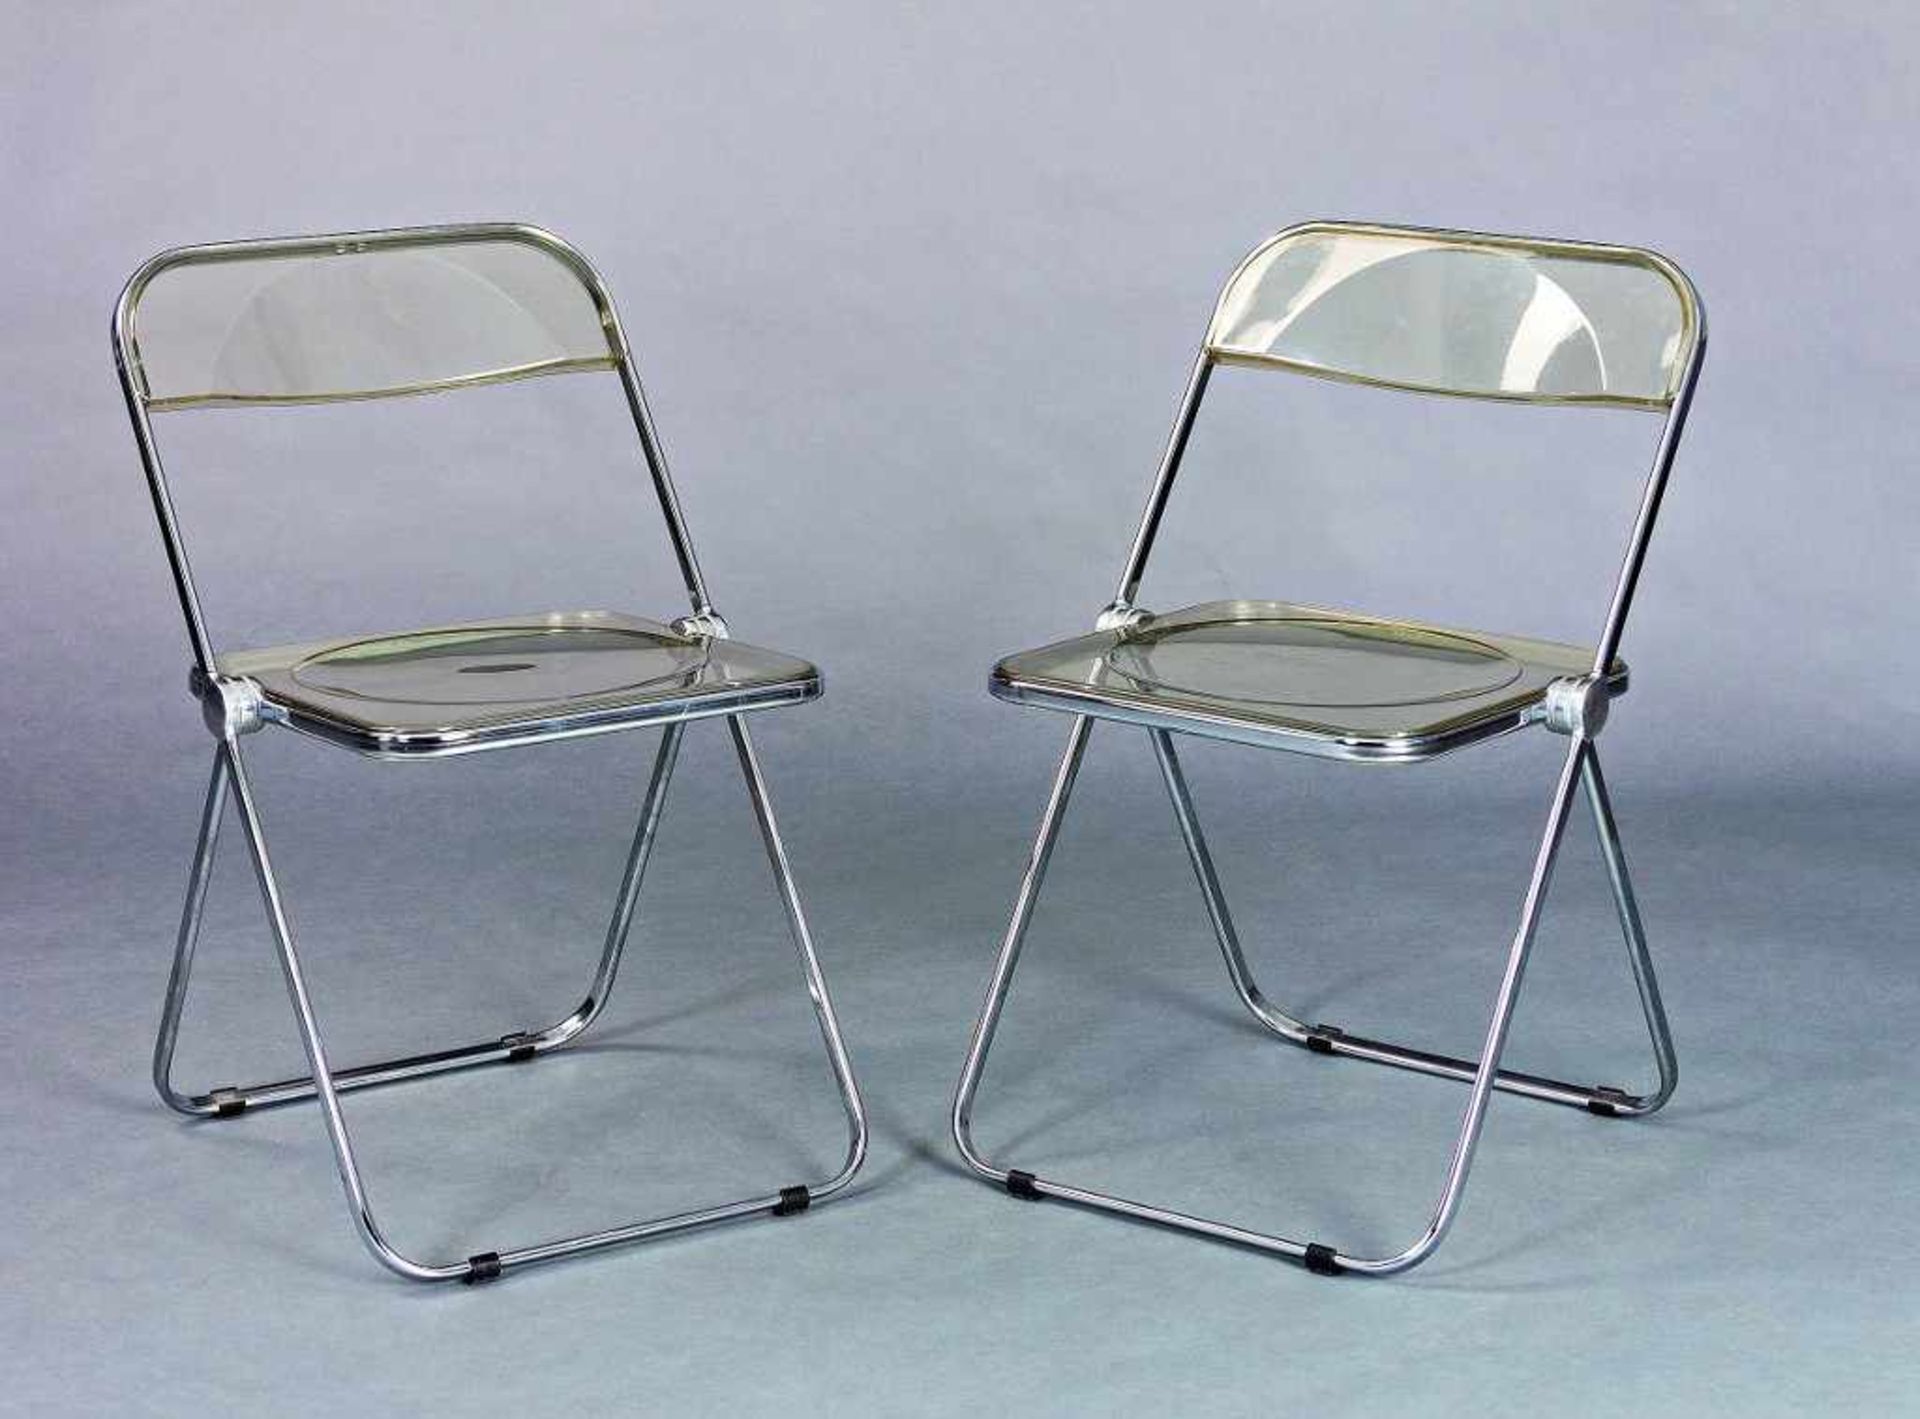 Paar Plia-Stühle. Stahlrohr und Kunststoff. Entwurf Giancarlo Piretti 1968 für Castelli